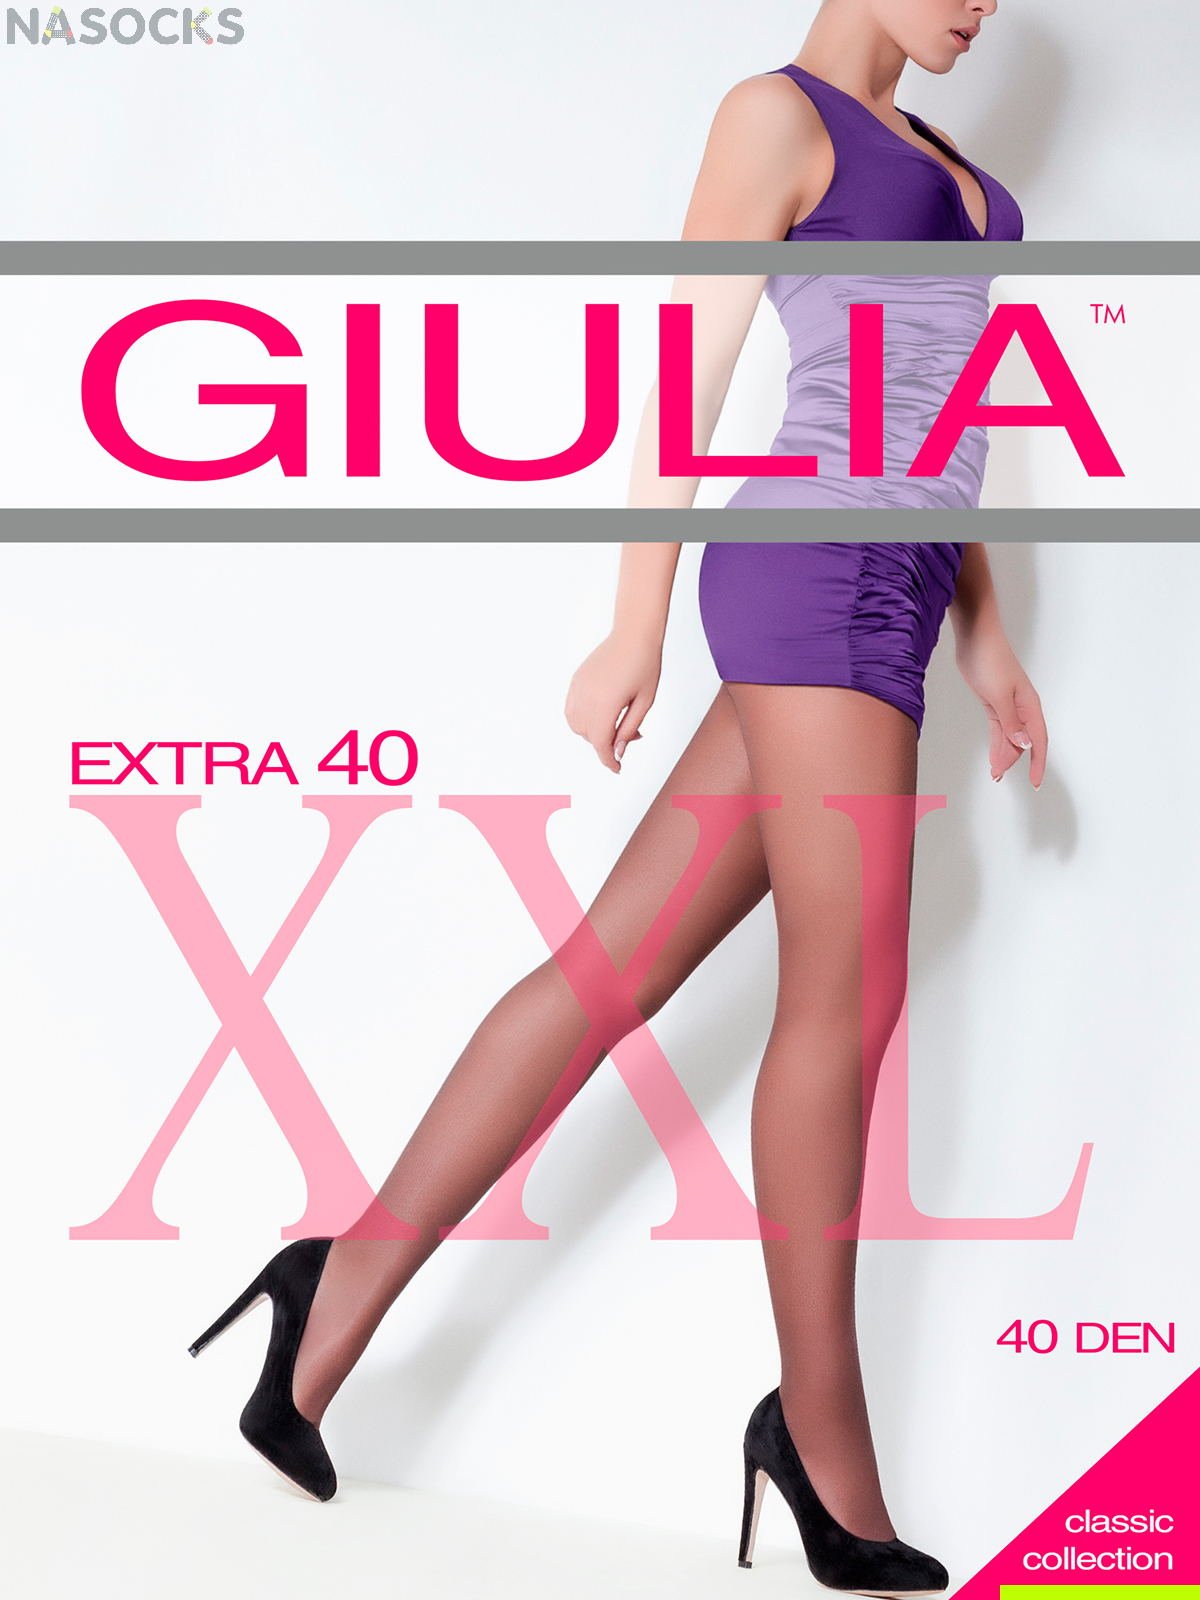 Колготки Giulia EXTRA 40 XL купить недорого|Бесплатная доставка!